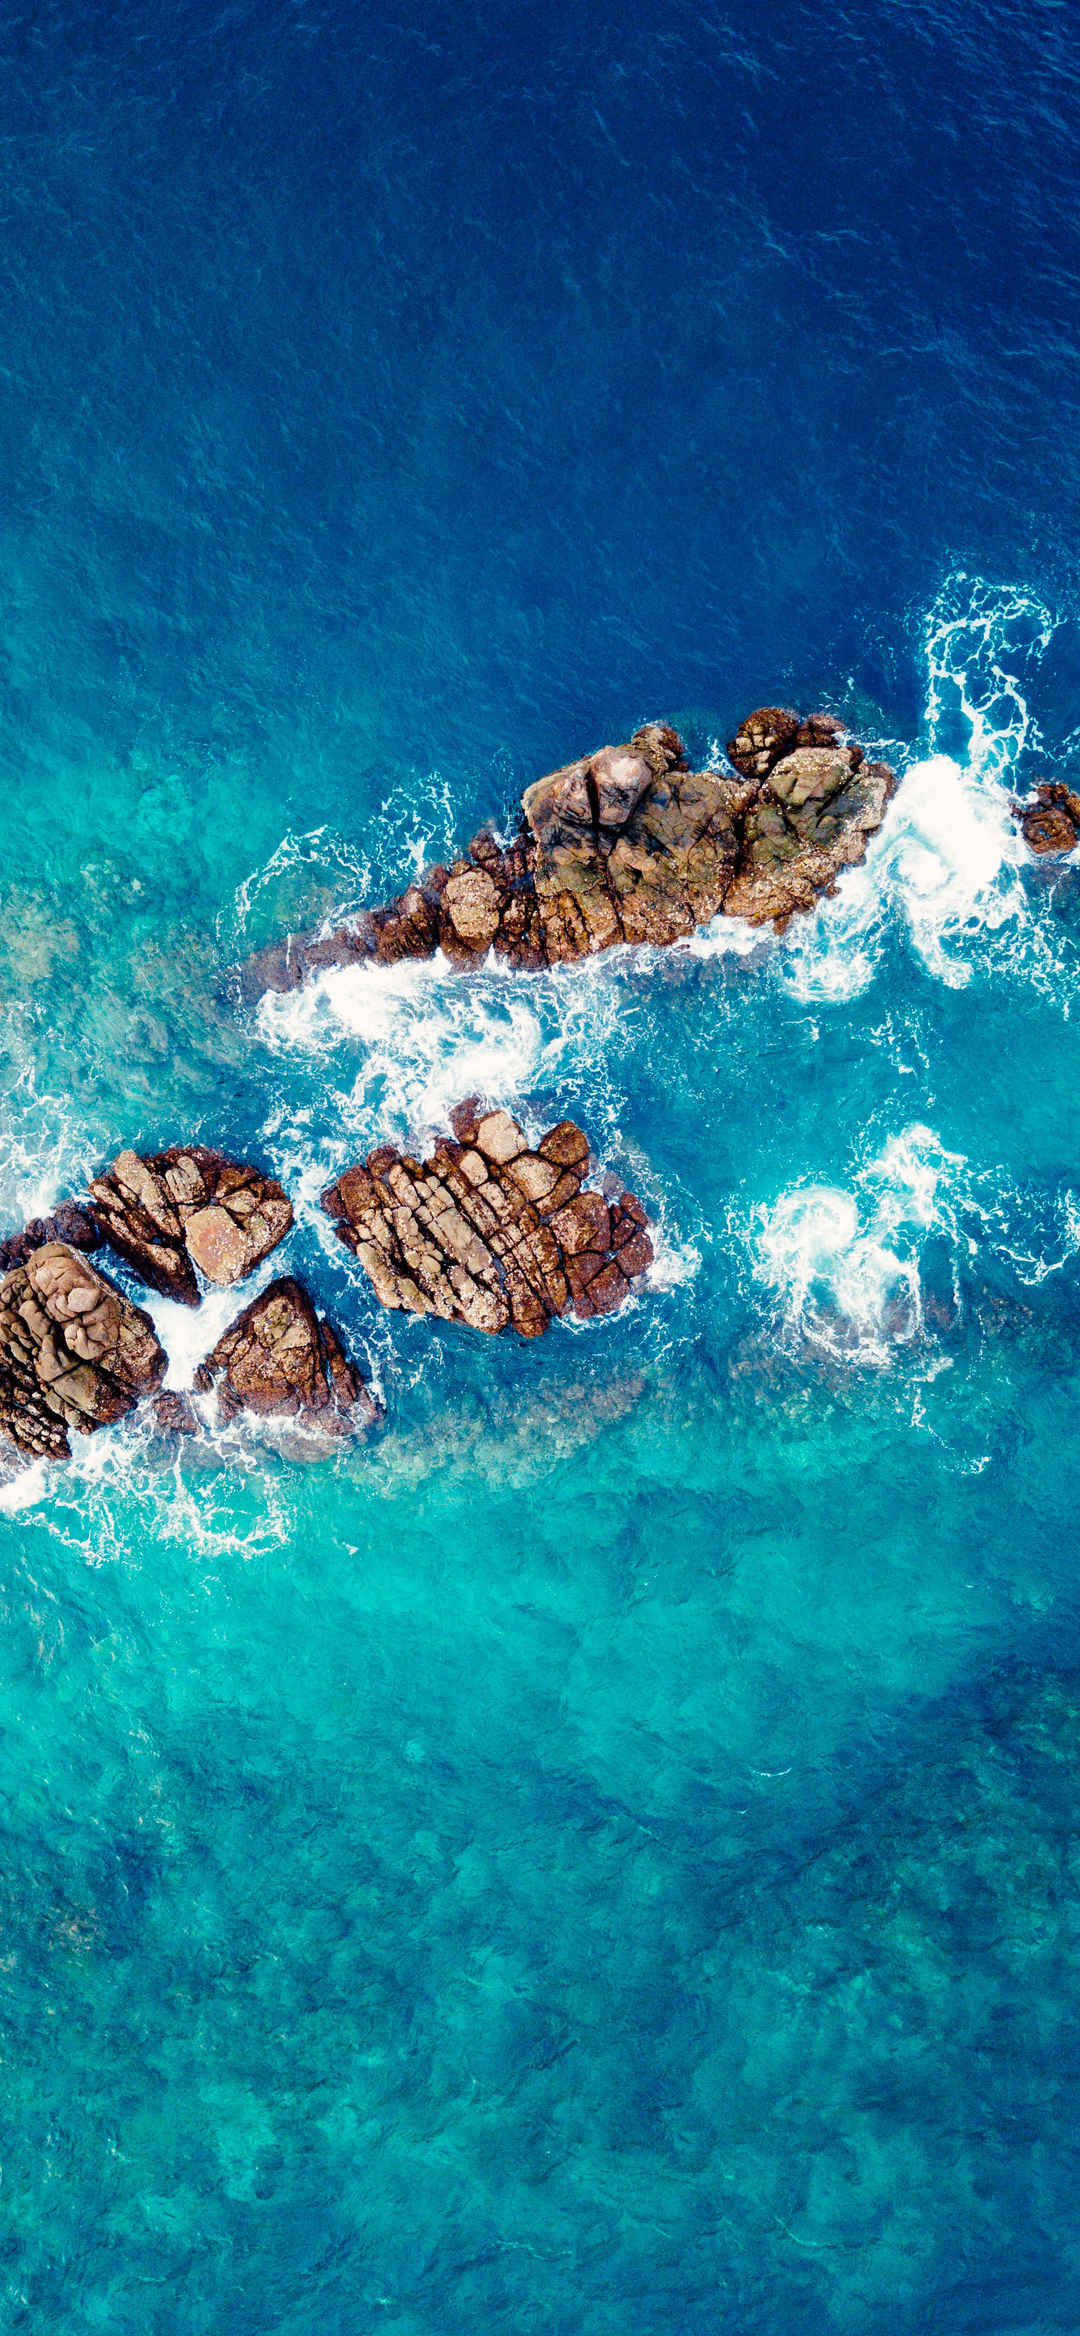 俯拍海上礁石山水风景图片-